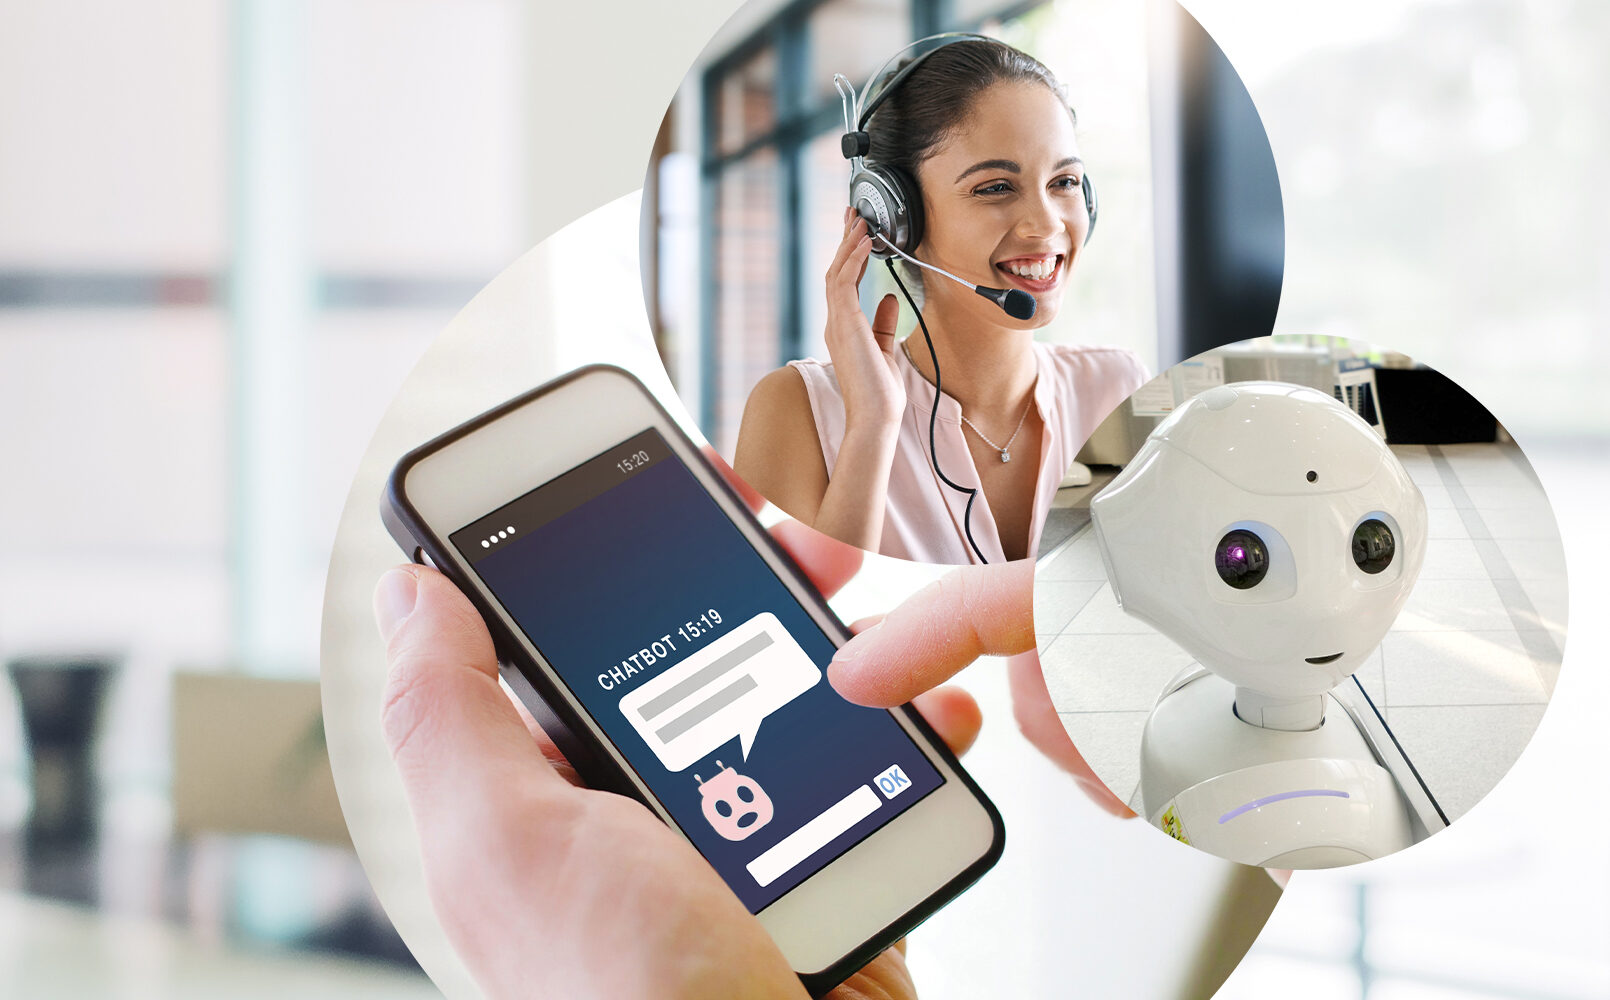 Bild einer Frau mit Headset, daneben ein Bild von einer vernetzten Struktur und dahinter ein Bild von einem Live Chat mit einem Chatbot und ein Bild von einem Roboter, valantic Blog Robotic, Chatbots und Konversational AI